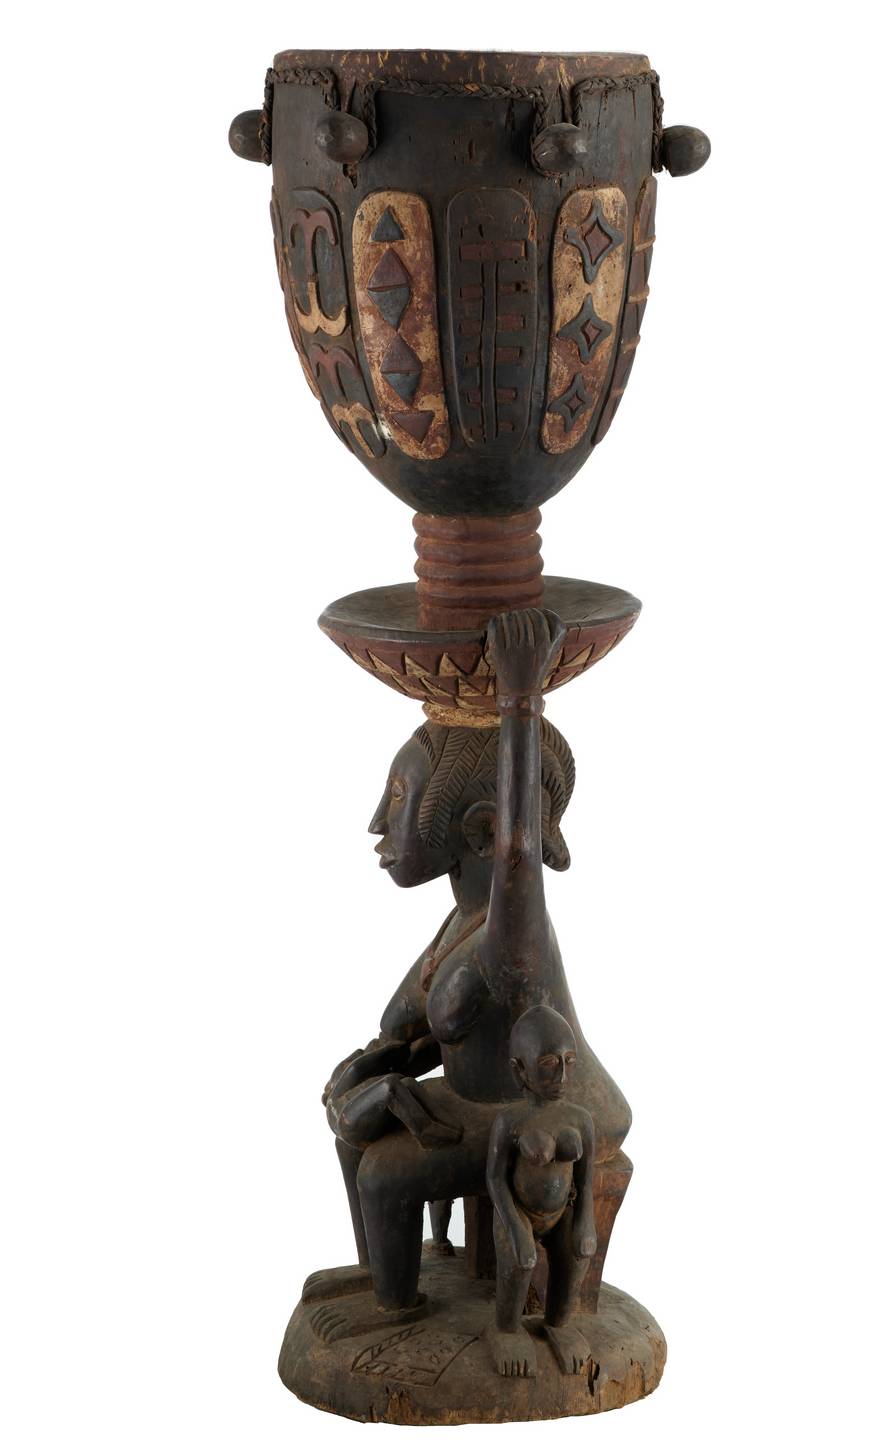 Baga n°1974 tambour, d`afrique : Guinée-Bissau, statuette Baga n°1974 tambour, masque ancien africain Baga n°1974 tambour, art du Guinée-Bissau - Art Africain, collection privées Belgique. Statue africaine de la tribu des Baga n°1974 tambour, provenant du Guinée-Bissau, 1974 Grand tambour monté sur une cariatide représentant une maternité avec 3 enfants.Elle tient le plateau du tambour avec sa main gauche. H.t.178cm.le cariatide 100cm.,le tambour 78cm.1ere moitié du  20eme sc.. art,culture,masque,statue,statuette,pot,ivoire,exposition,expo,masque original,masques,statues,statuettes,pots,expositions,expo,masques originaux,collectionneur d`art,art africain,culture africaine,masque africain,statue africaine,statuette africaine,pot africain,ivoire africain,exposition africain,expo africain,masque origina africainl,masques africains,statues africaines,statuettes africaines,pots africains,expositions africaines,expo africaines,masques originaux  africains,collectionneur d`art africain